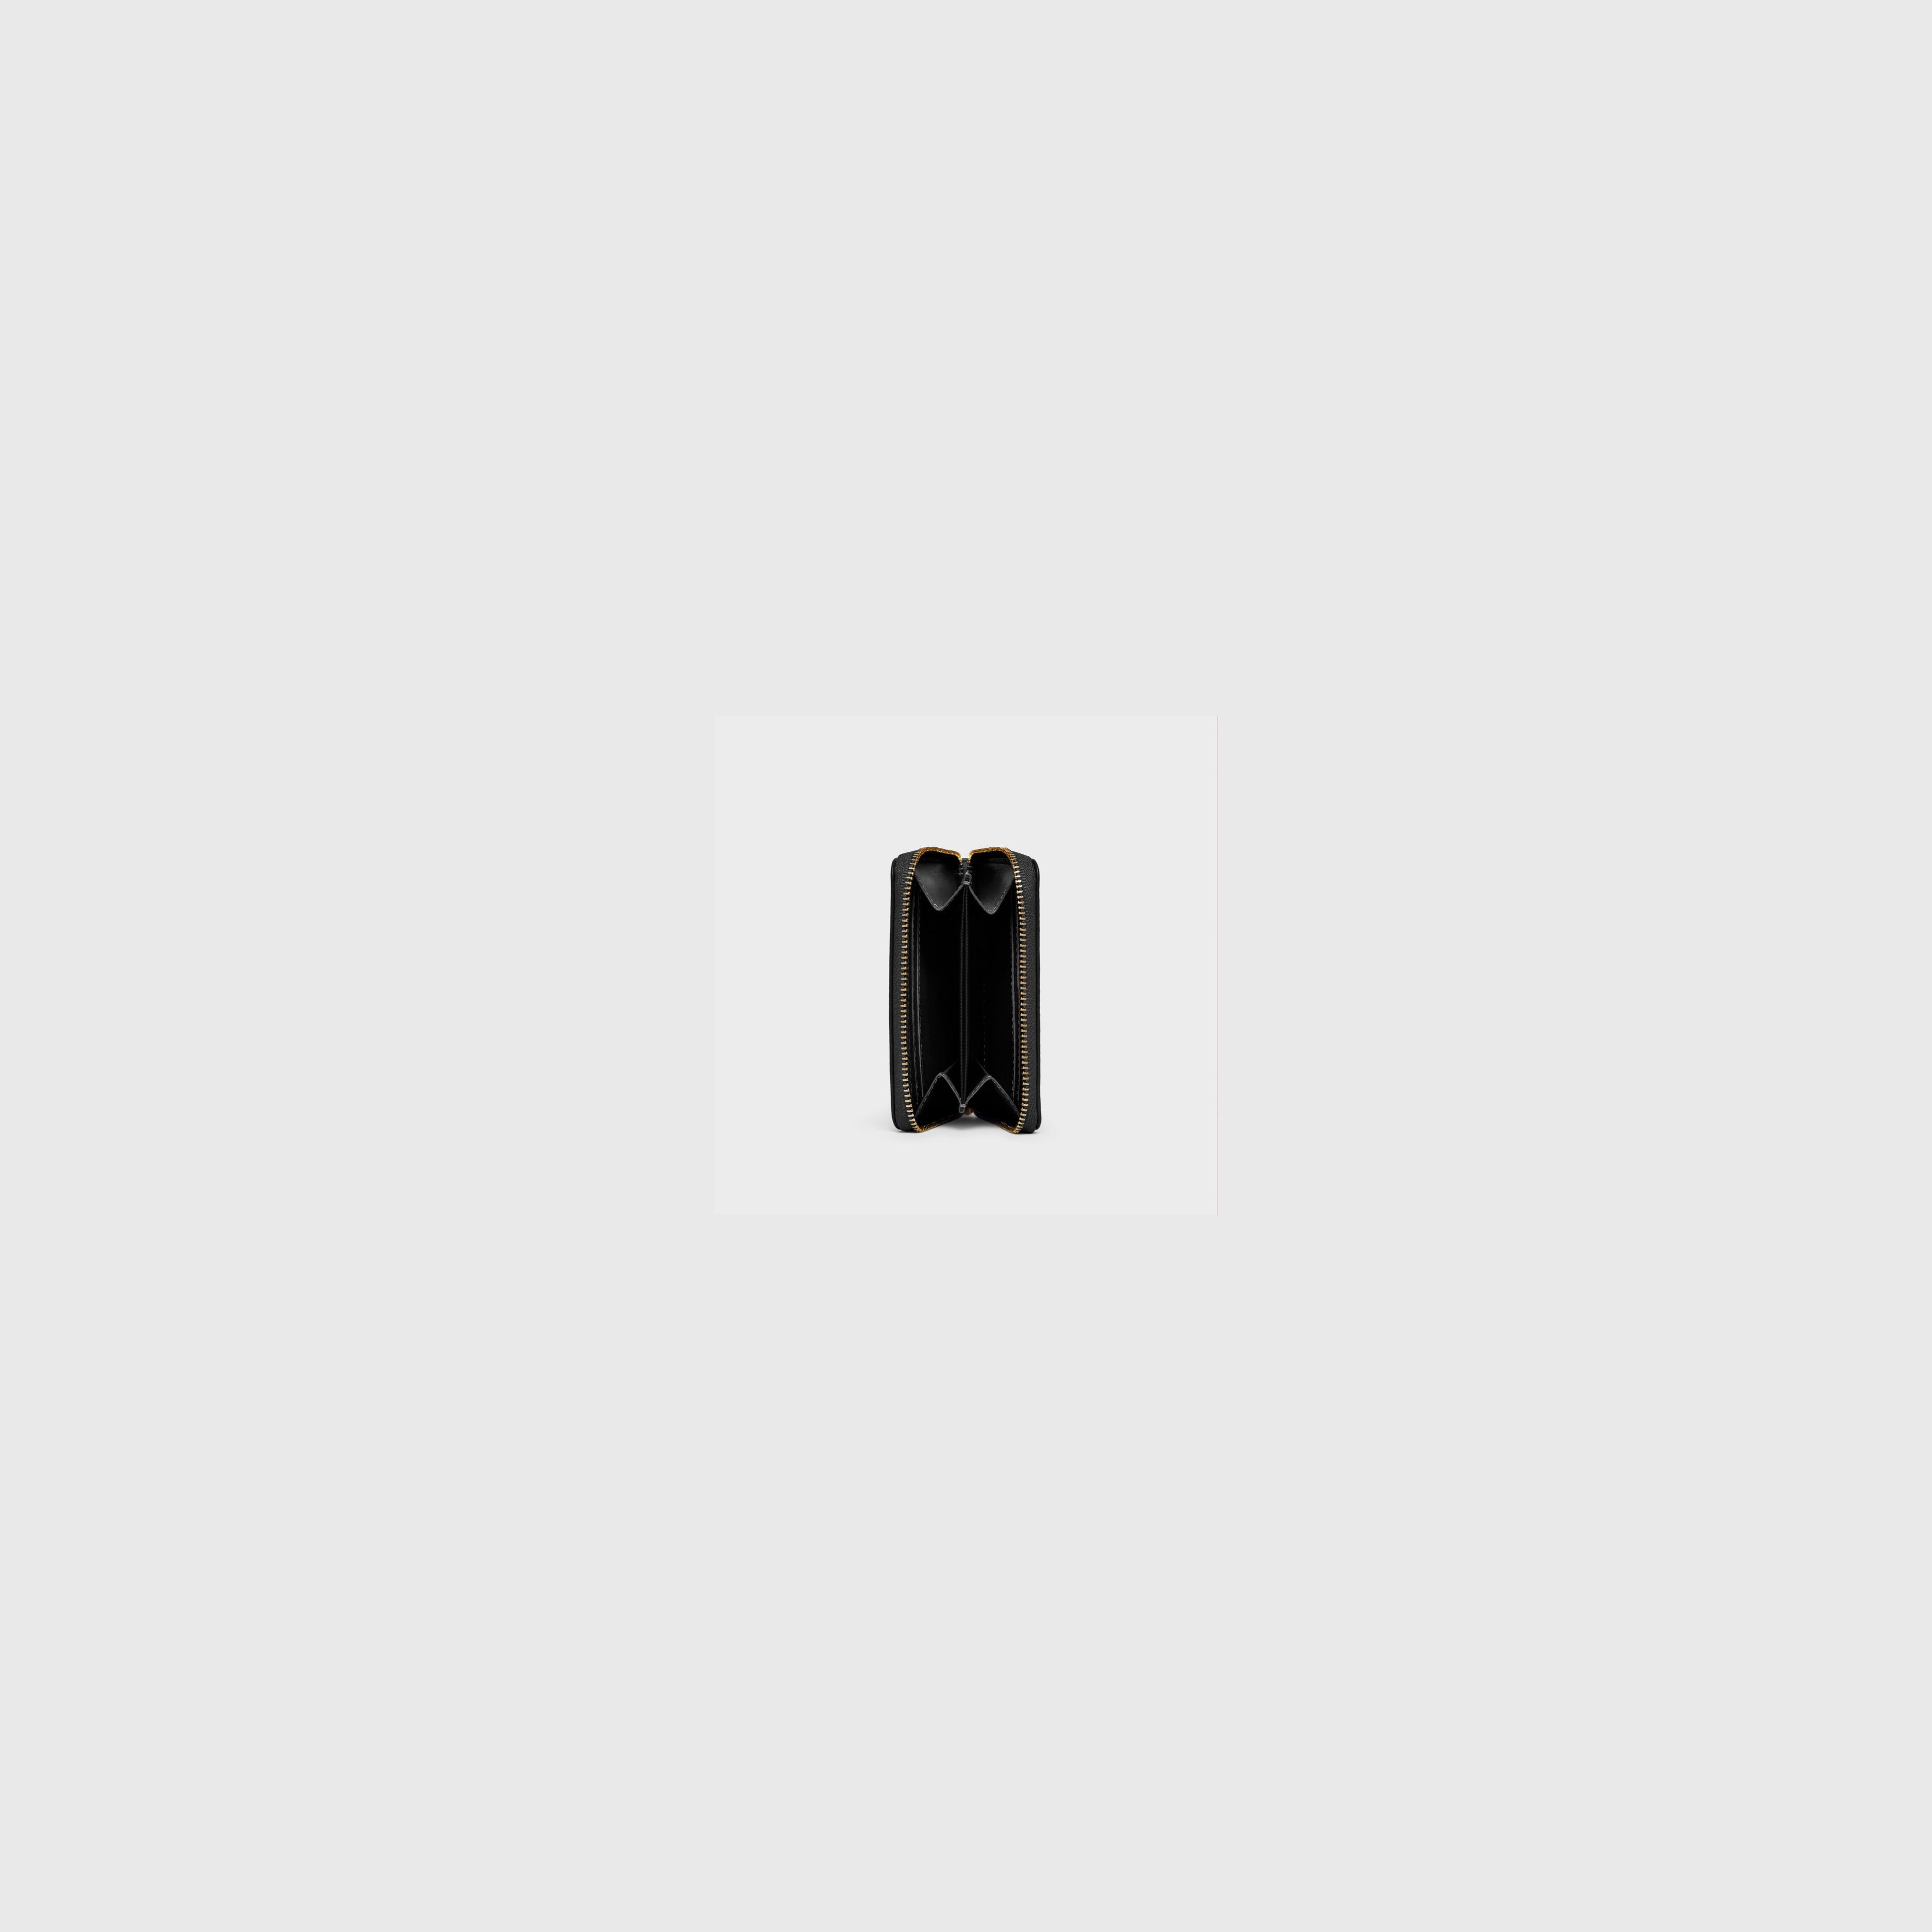 Small Zippy Wallet - N.108 - Black Smooth Nappa